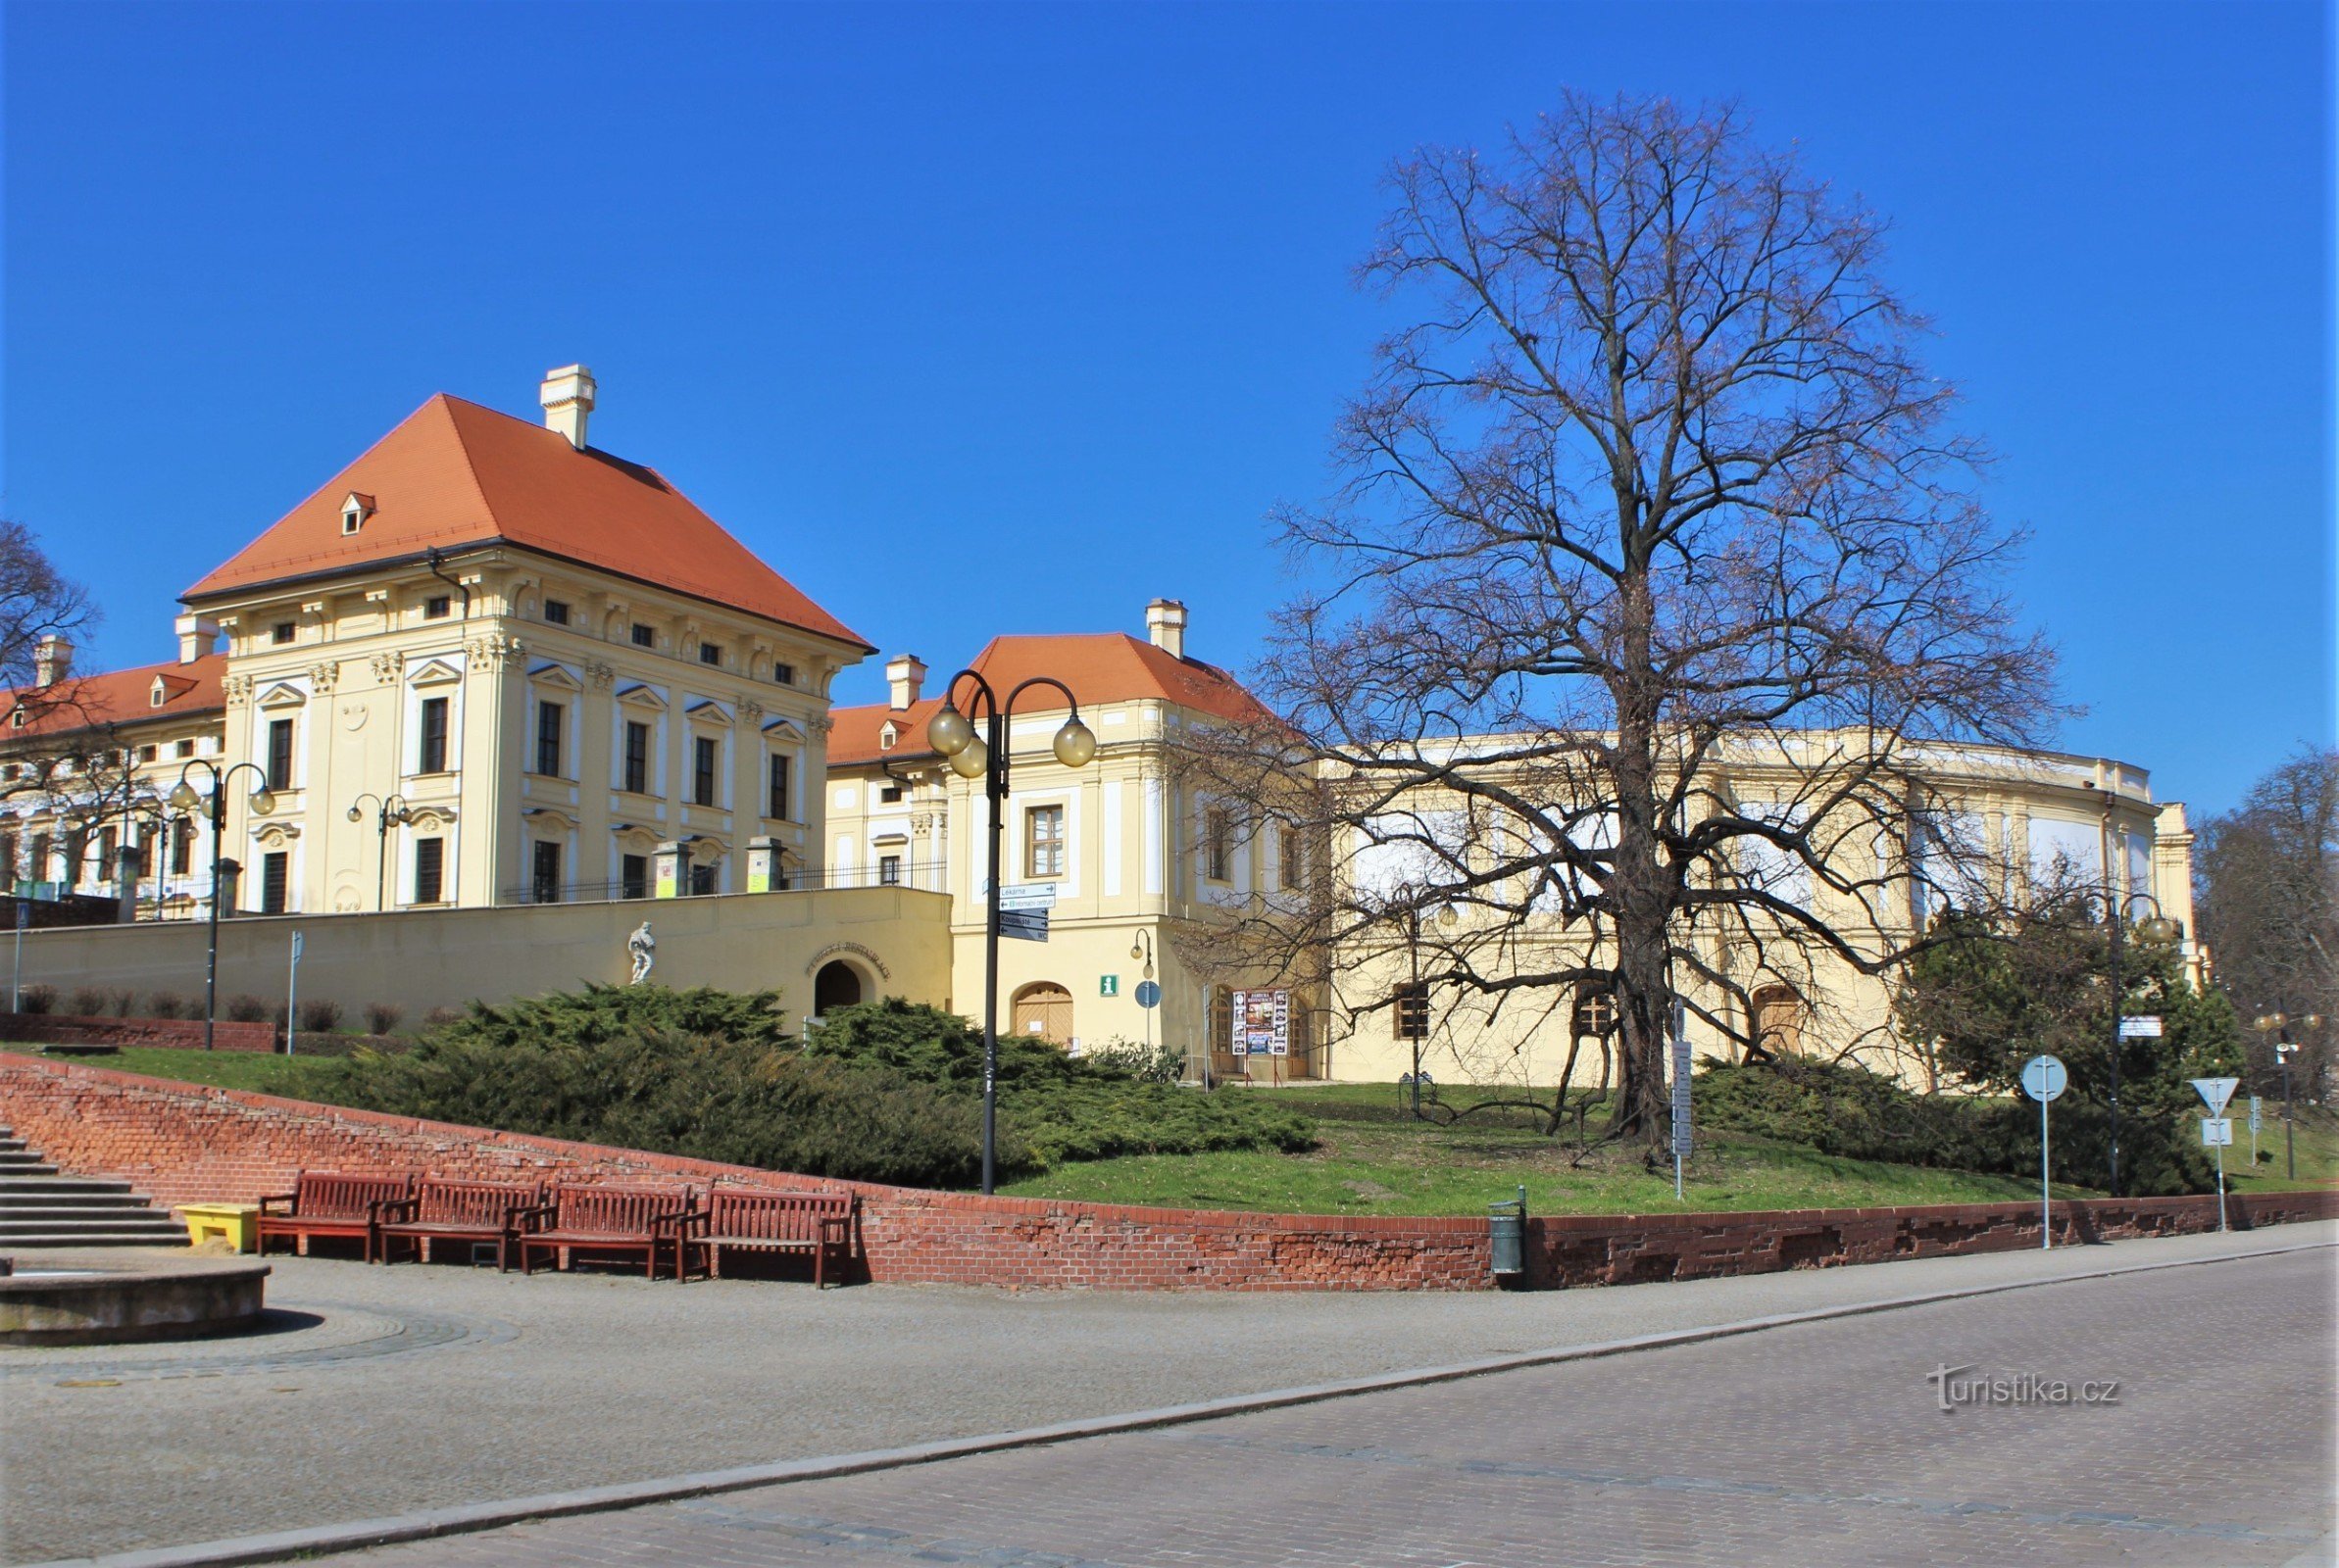 Slavkov lähellä Brnoa - Tietokeskus